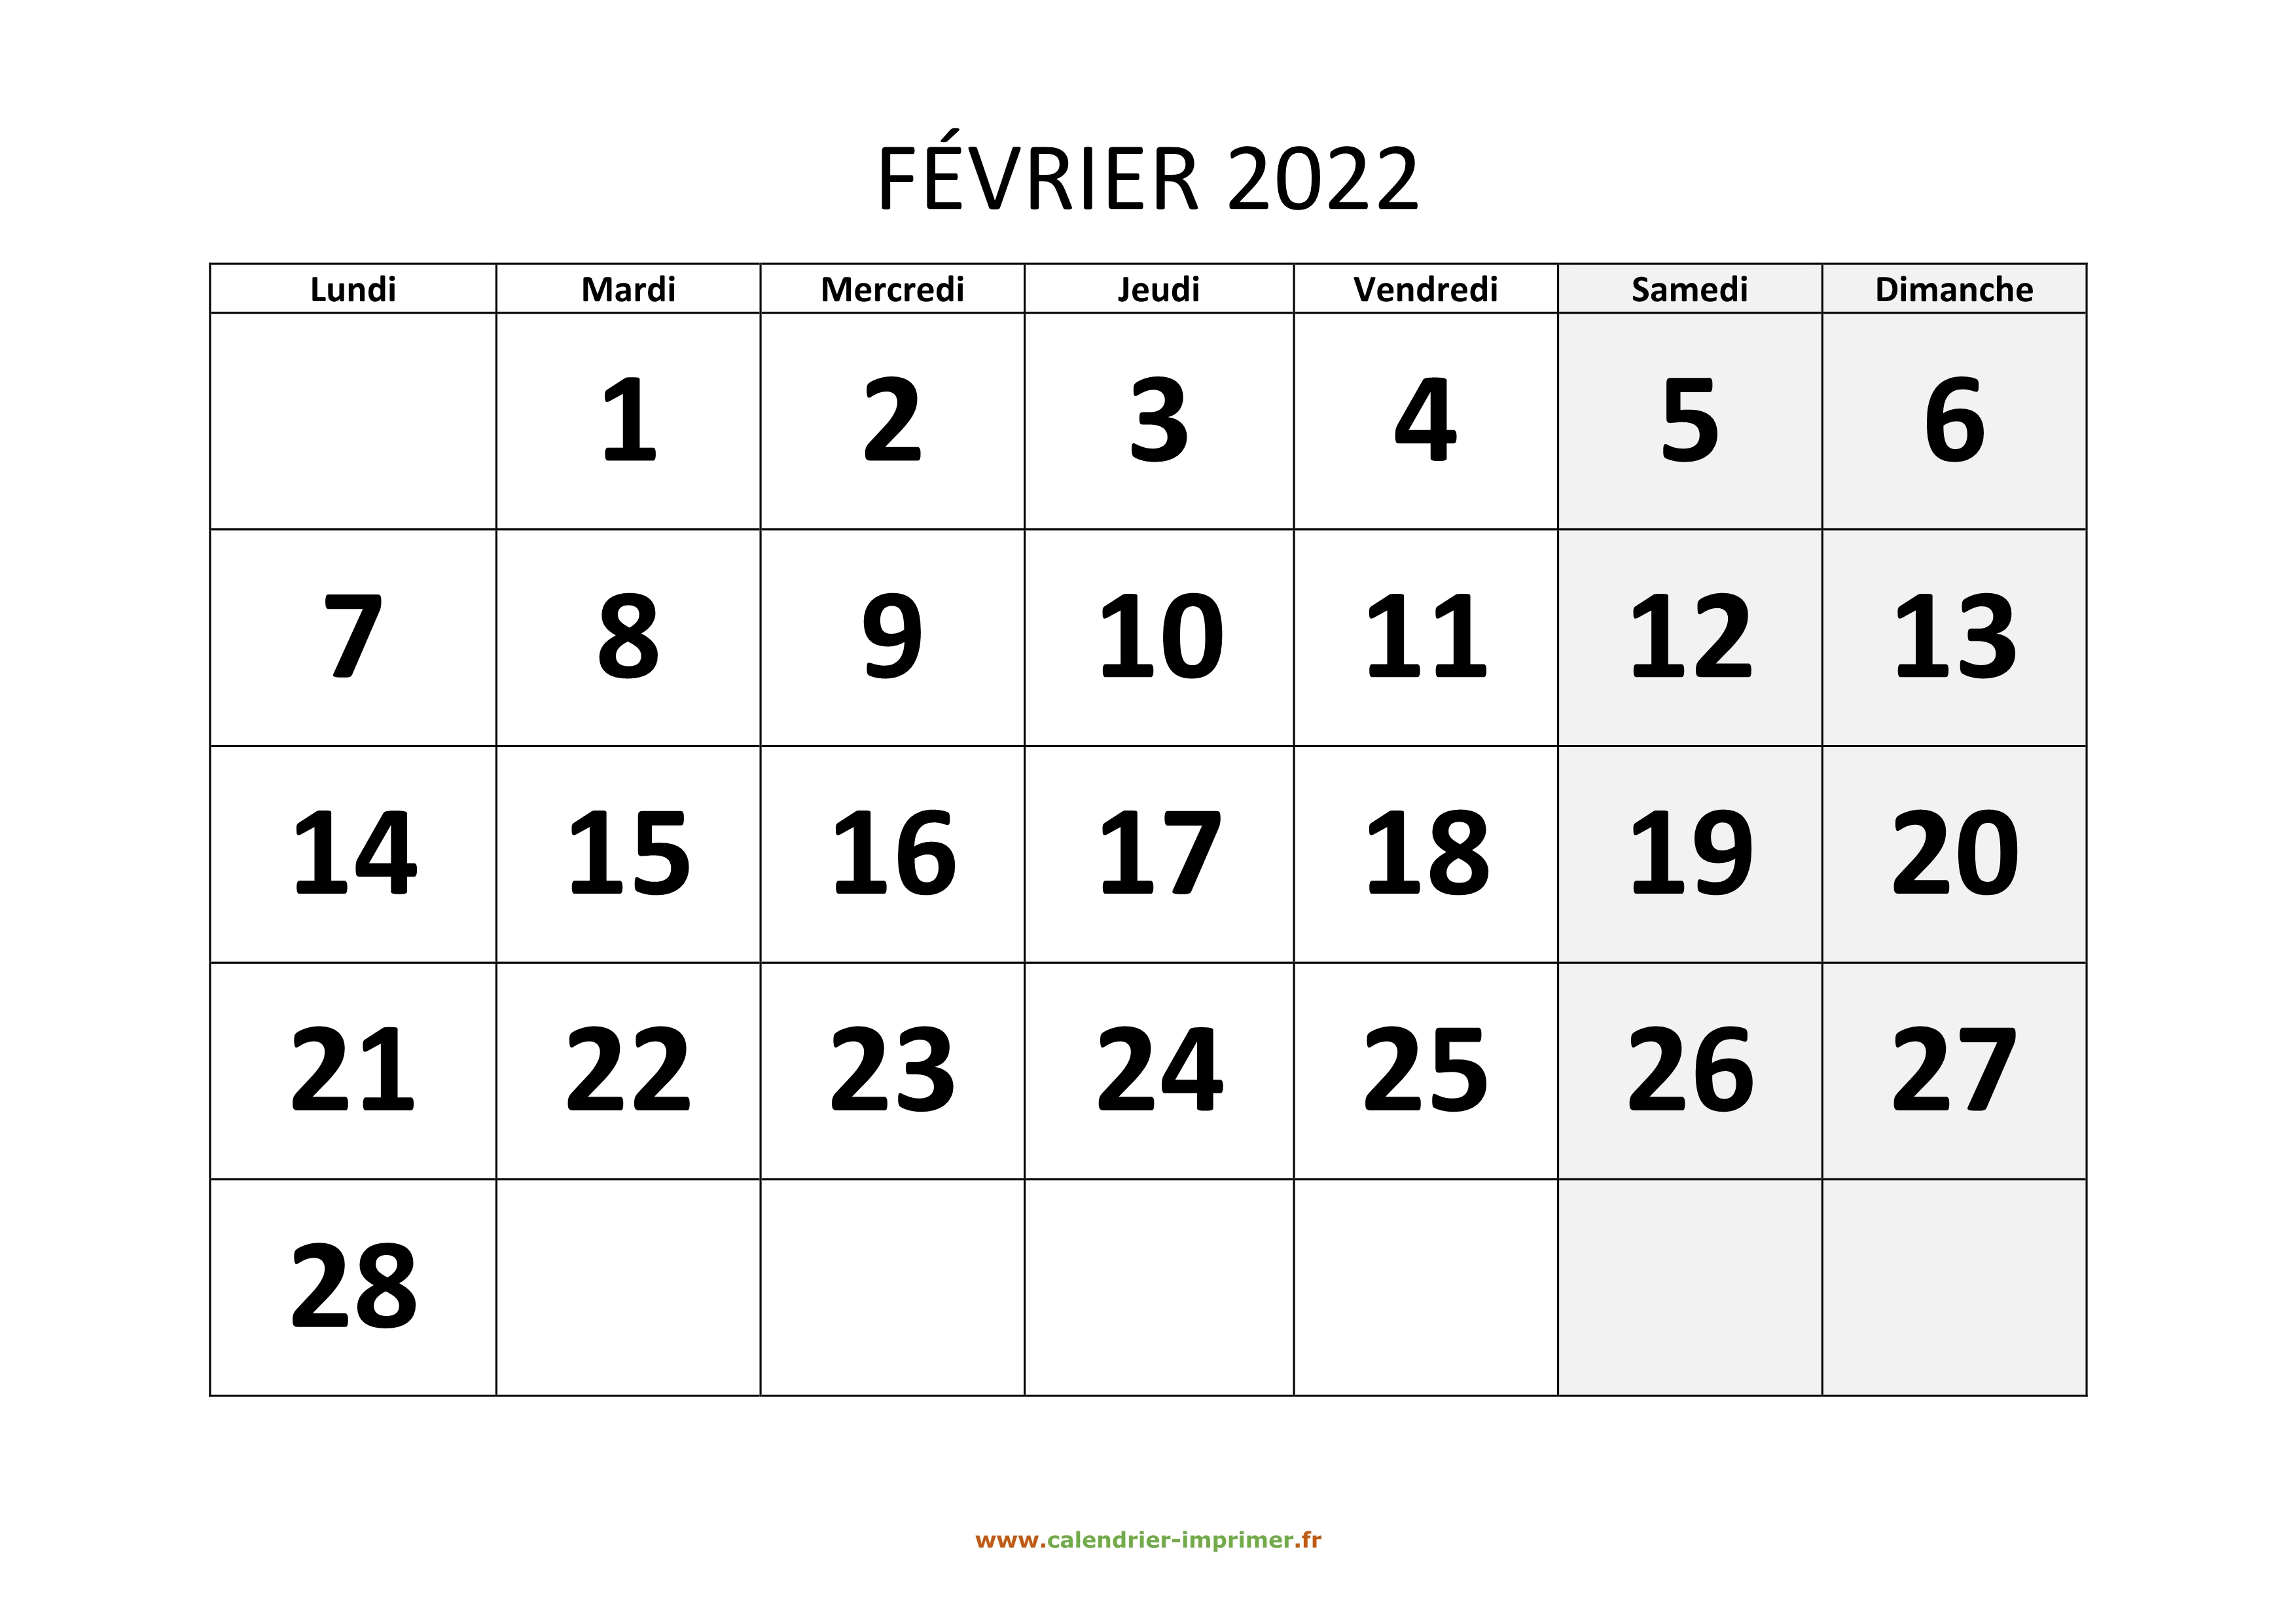 Calendrier à Imprimer Février 2022 Calendrier Février 2022 à imprimer